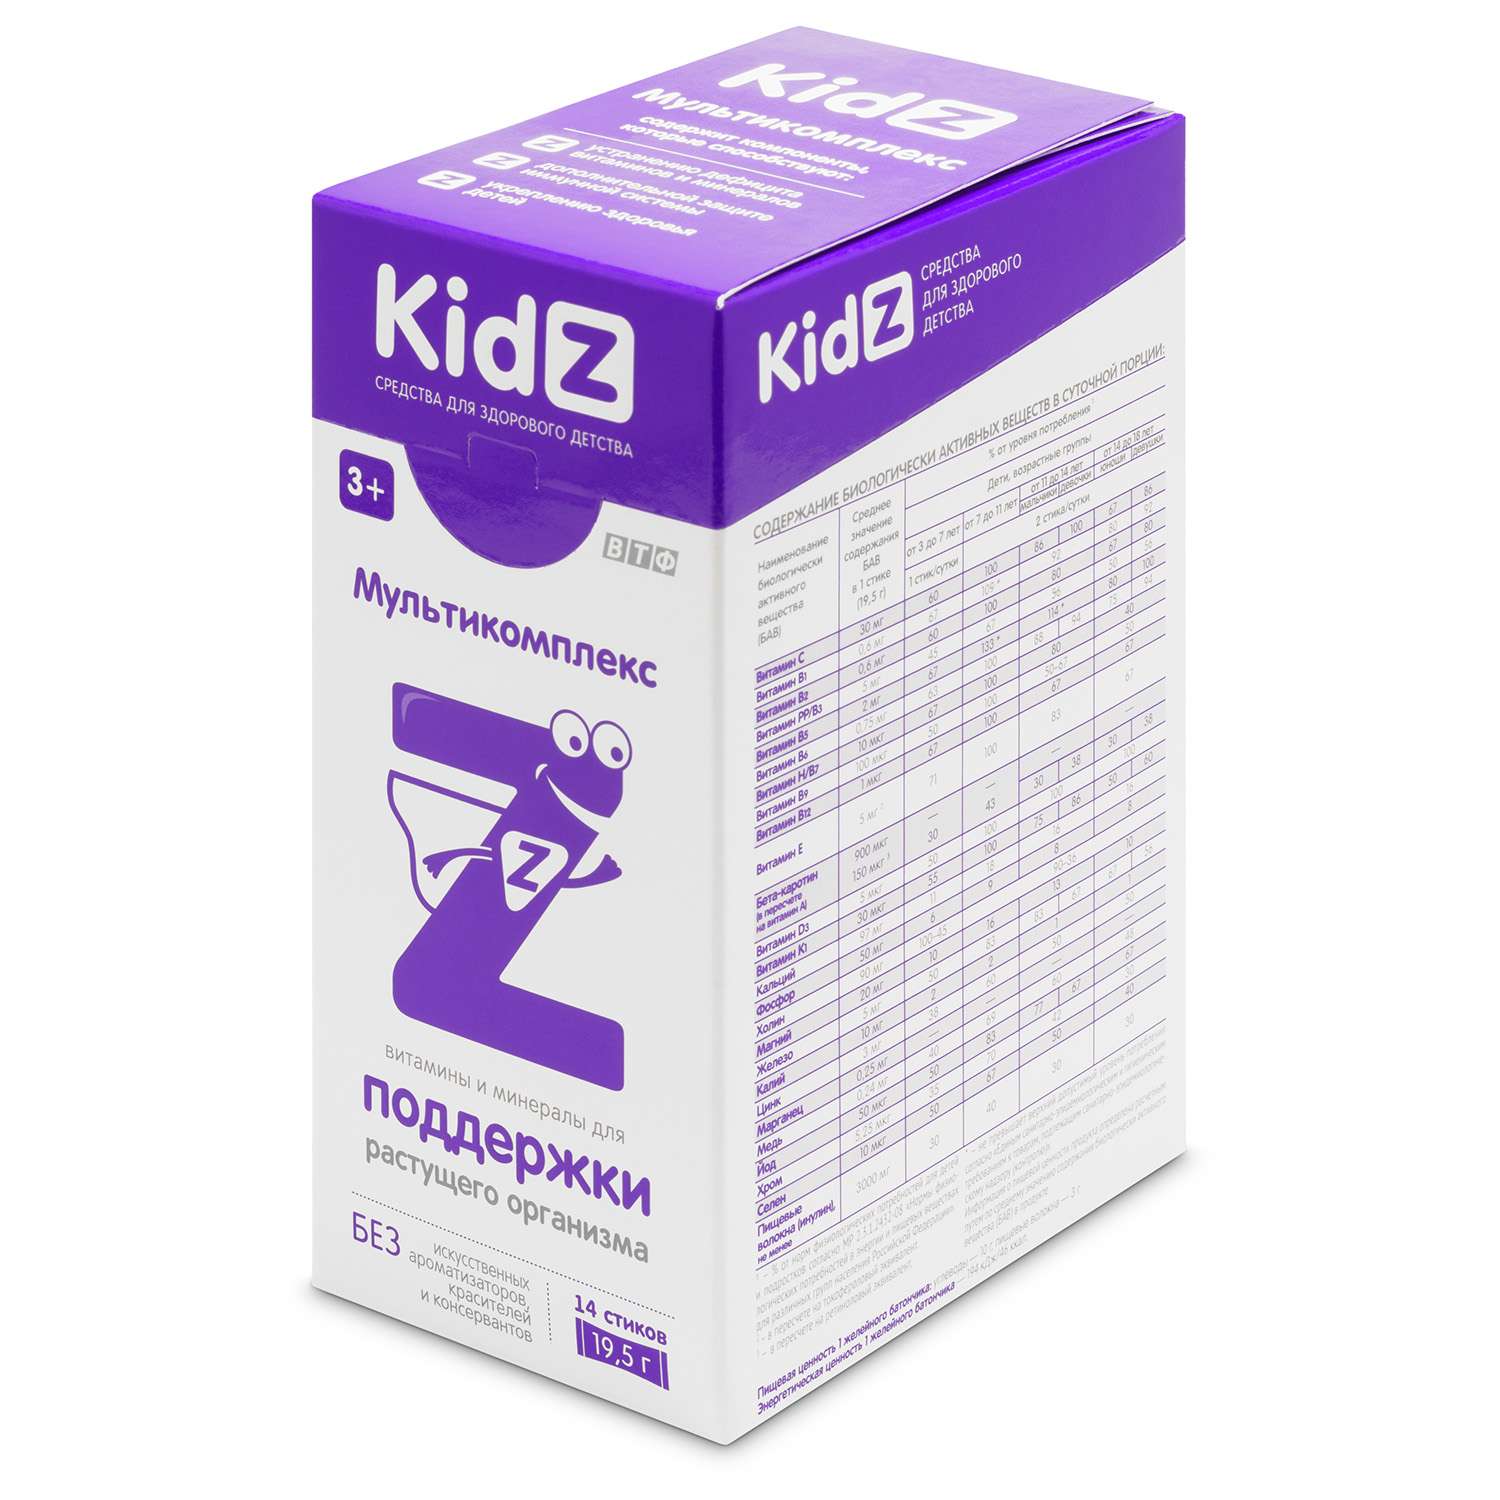 Биологически активная добавка Kidz Мультикомплекс для детей 14стиков*19.5г - фото 1